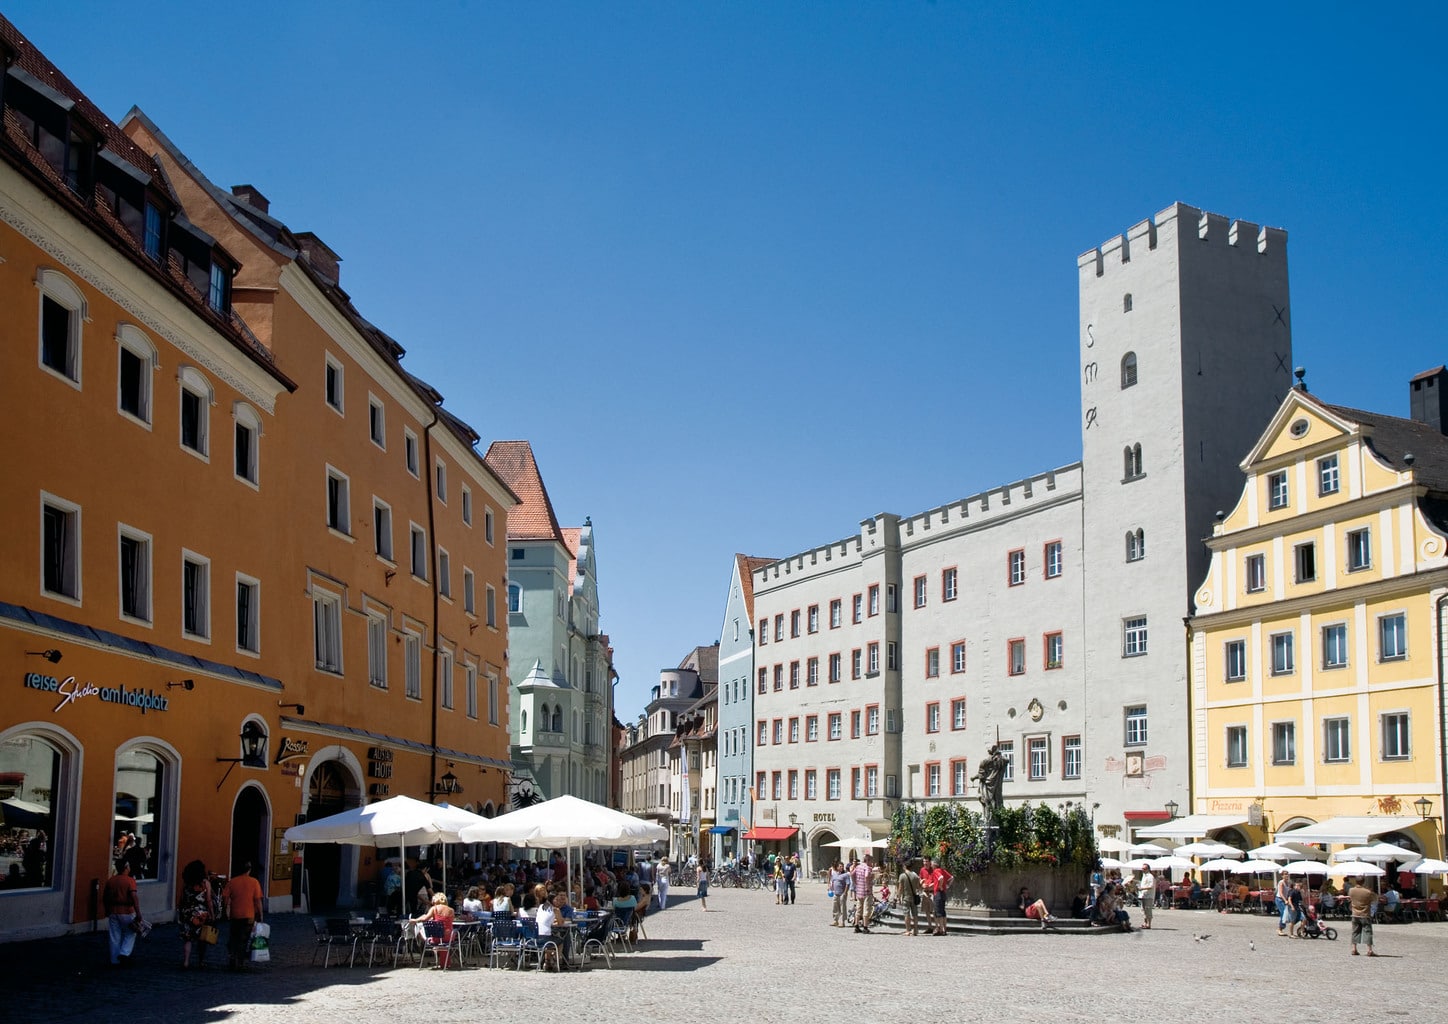 De Haidplatz is een van de mooiste plekken in de historische binnenstad van Regensburg